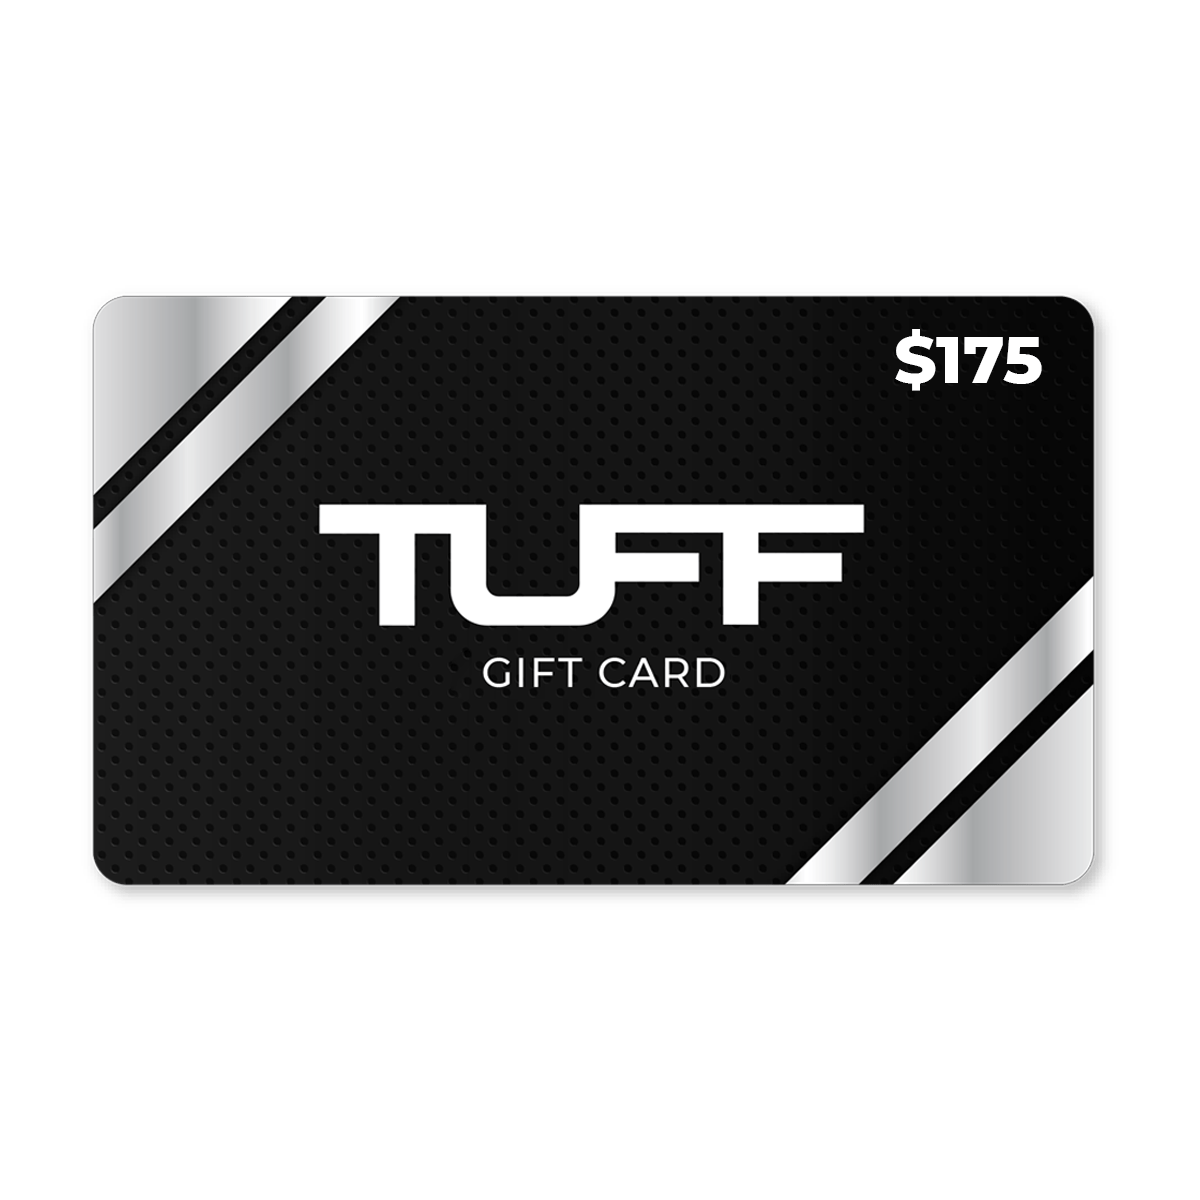 TuffWraps Gift Card $175.00 TUFF Gift Card